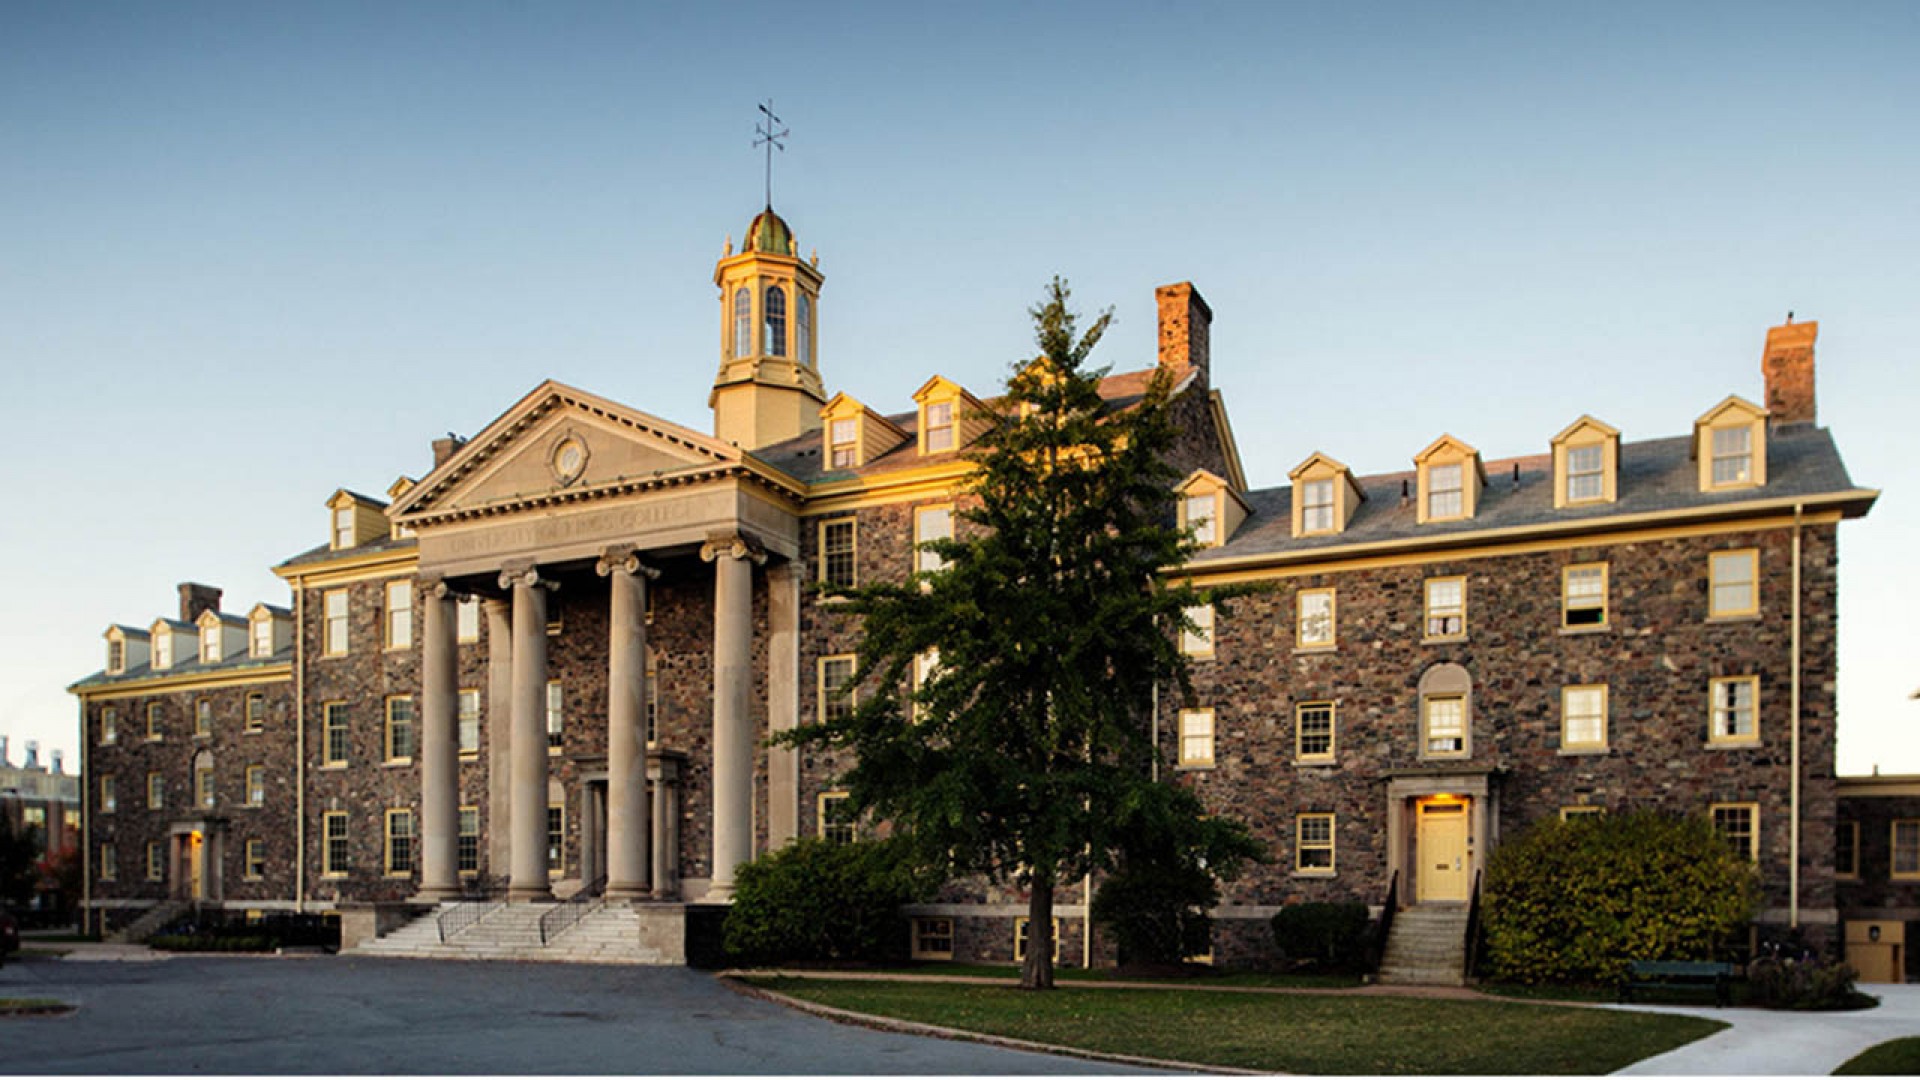 Nên chọn du học đại học Canada tại ngôi trường lâu đời University of King’s College?